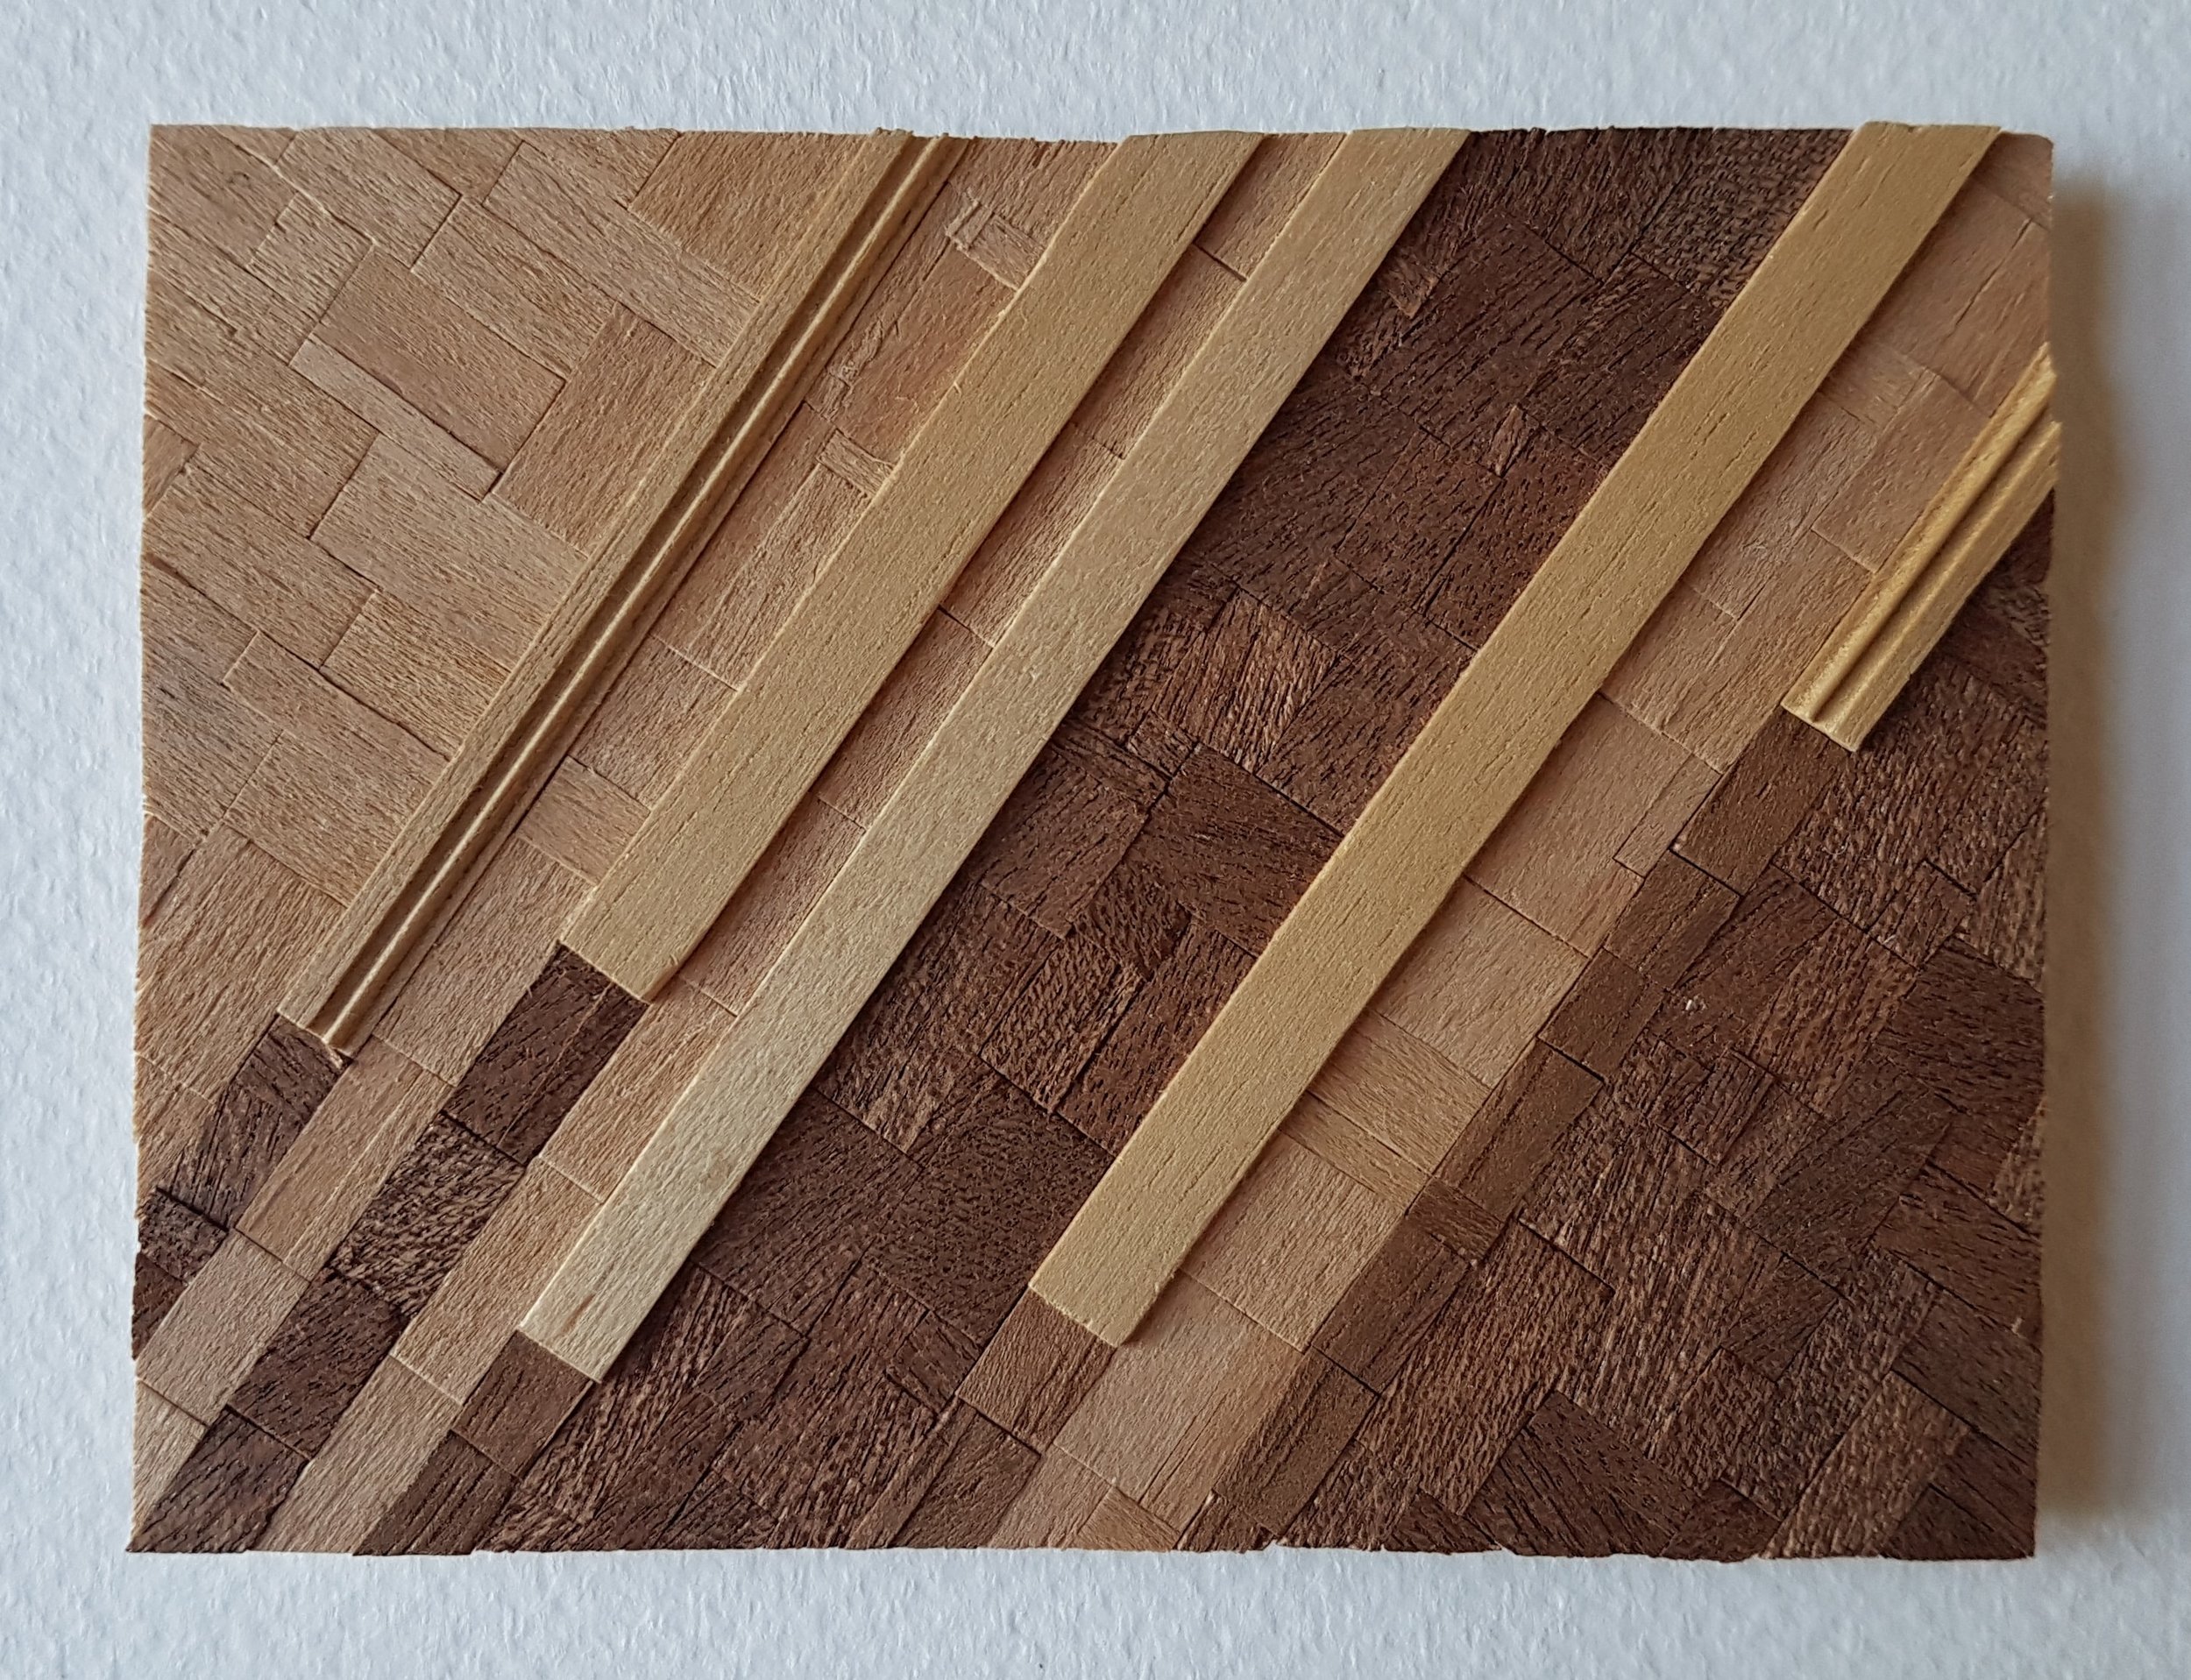 Series 64-26 (2013): wood veneers and mixed media 10cm x 8cm